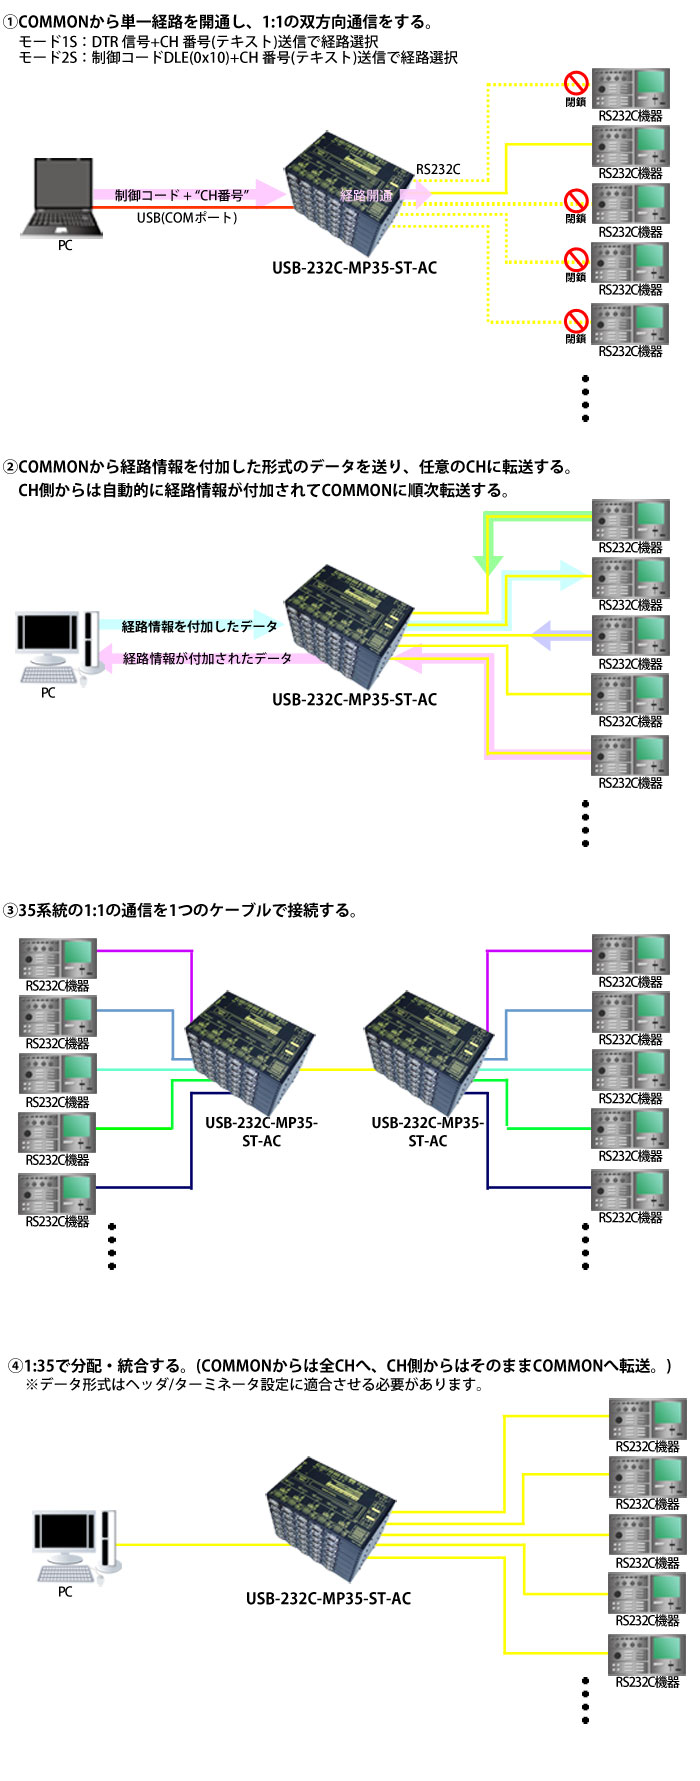 USB-232C-MP35-ST-AC接続例